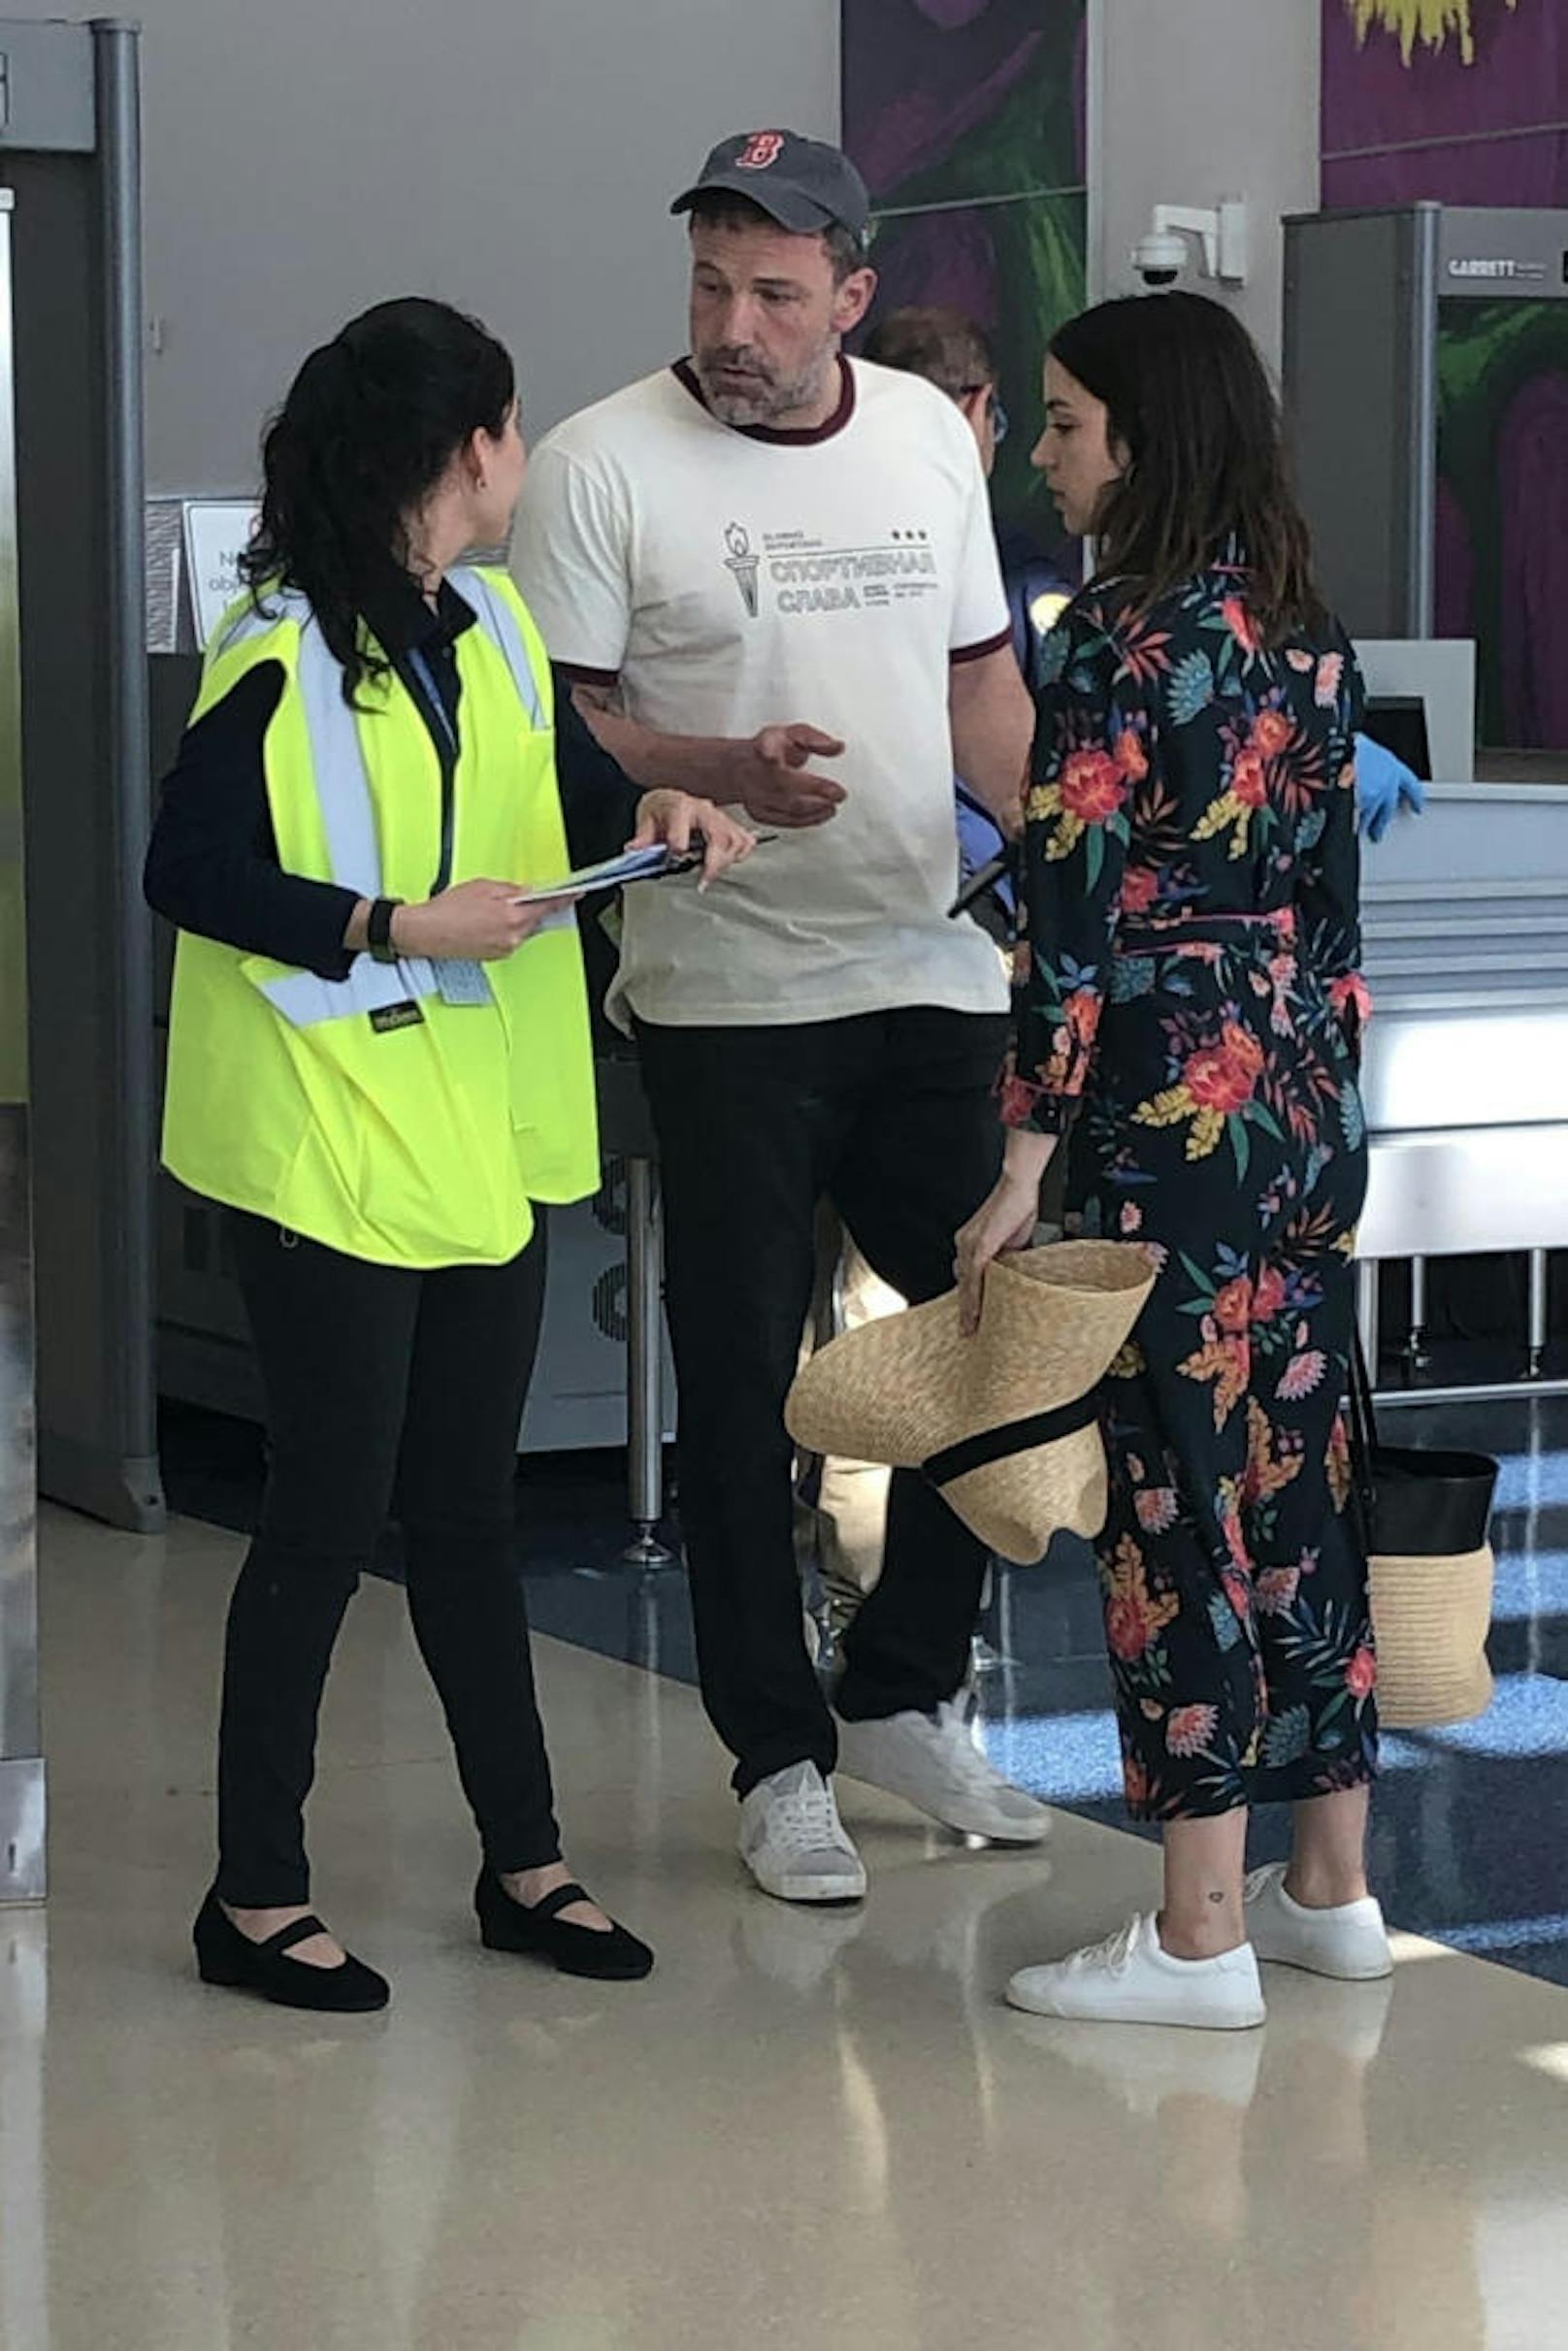 Mit der neuen Leibe in der Sonne turteln: Ben Affleck und Ana de Armas waren gemeinsam in Costa Rica. Dort erwischte sie ein Paparazzo am 7. März 2020 gemeinsam am Flughafen. Die beiden lernten sich am Filmset von "Deep Water" kennen.